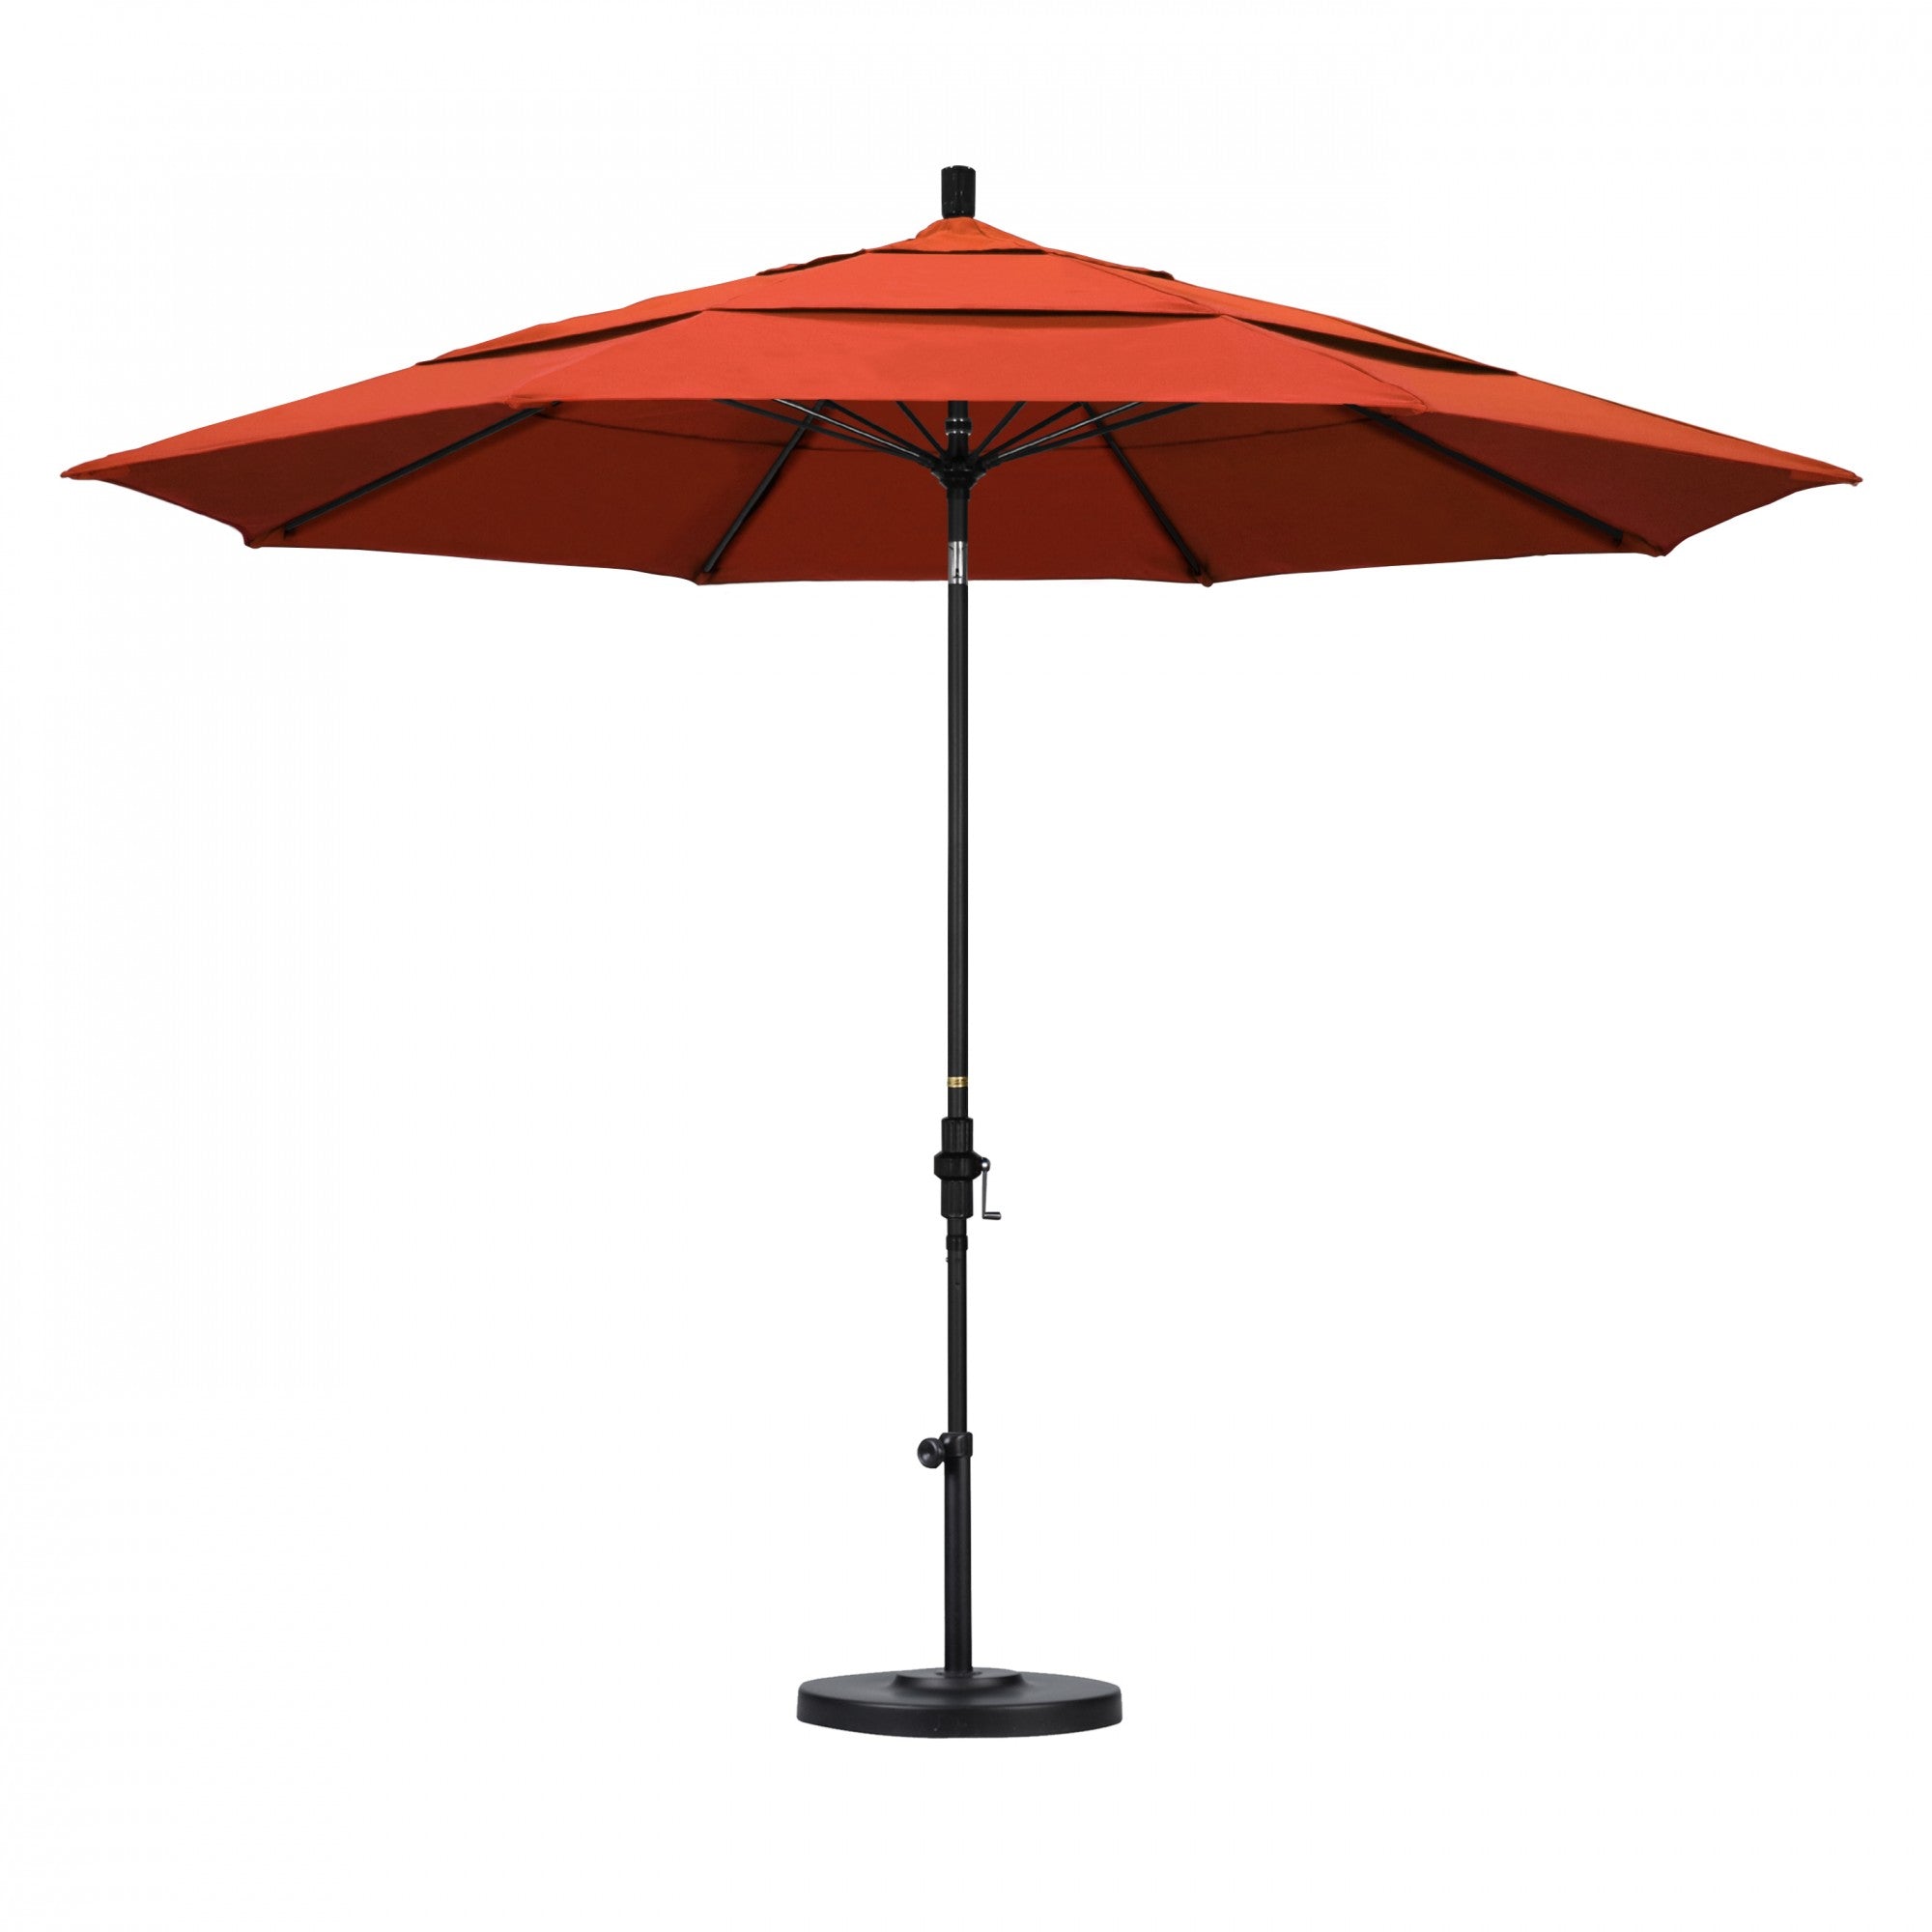 California Umbrella - 11' - Patio Umbrella Umbrella - Aluminum Pole - Sunset - Olefin - GSCUF118705-F27-DWV